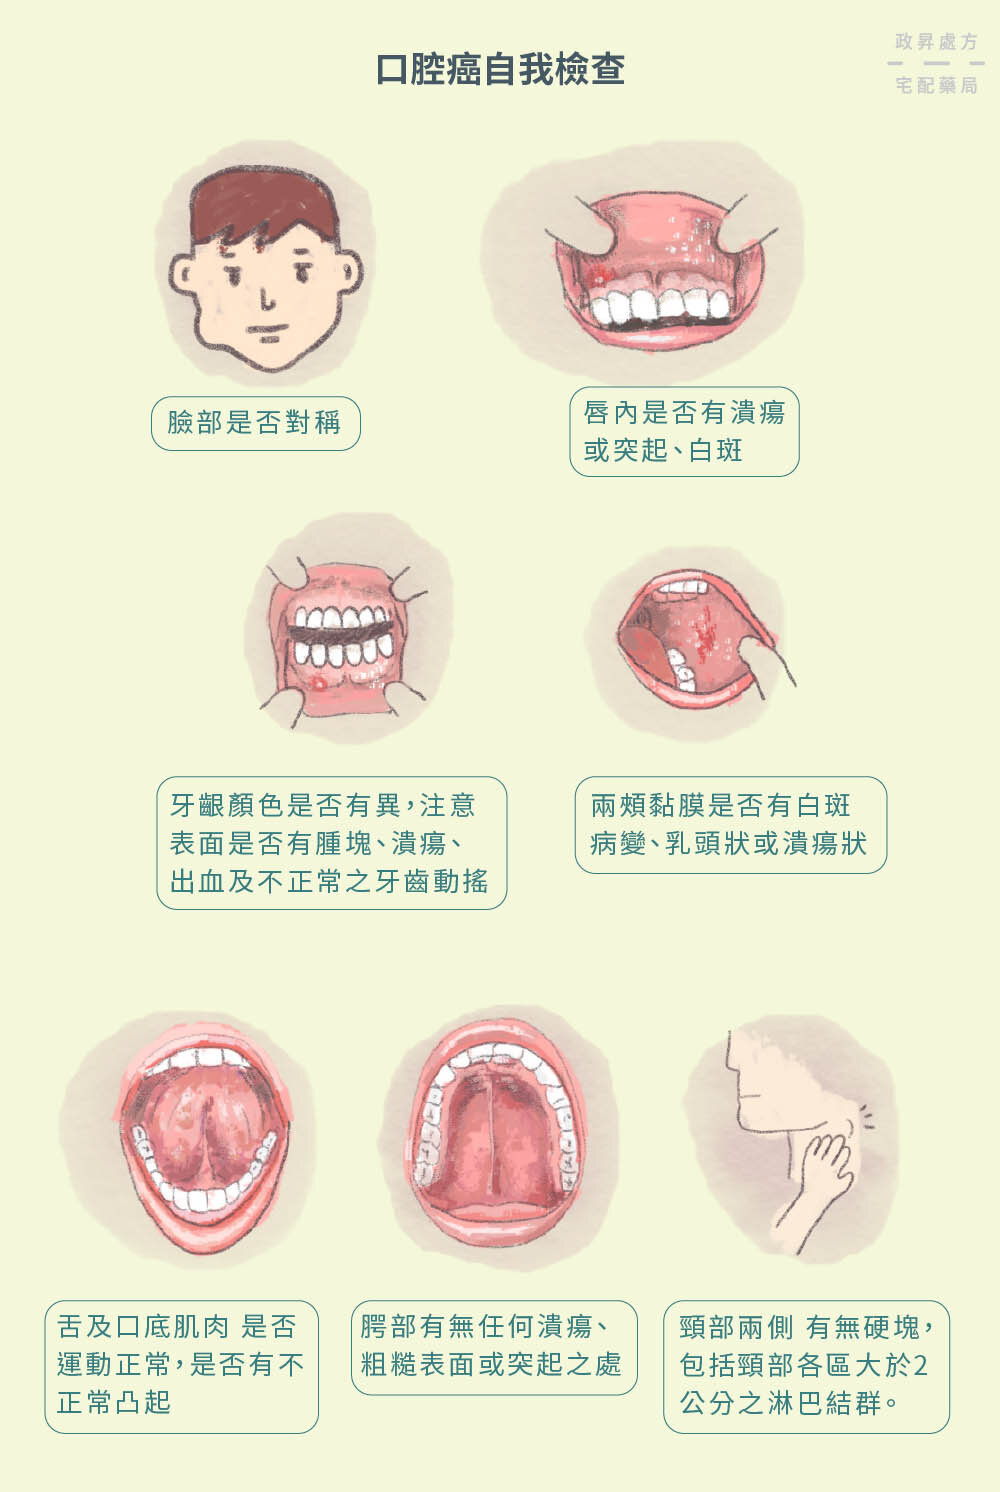 口腔癌自我檢查的七種方式